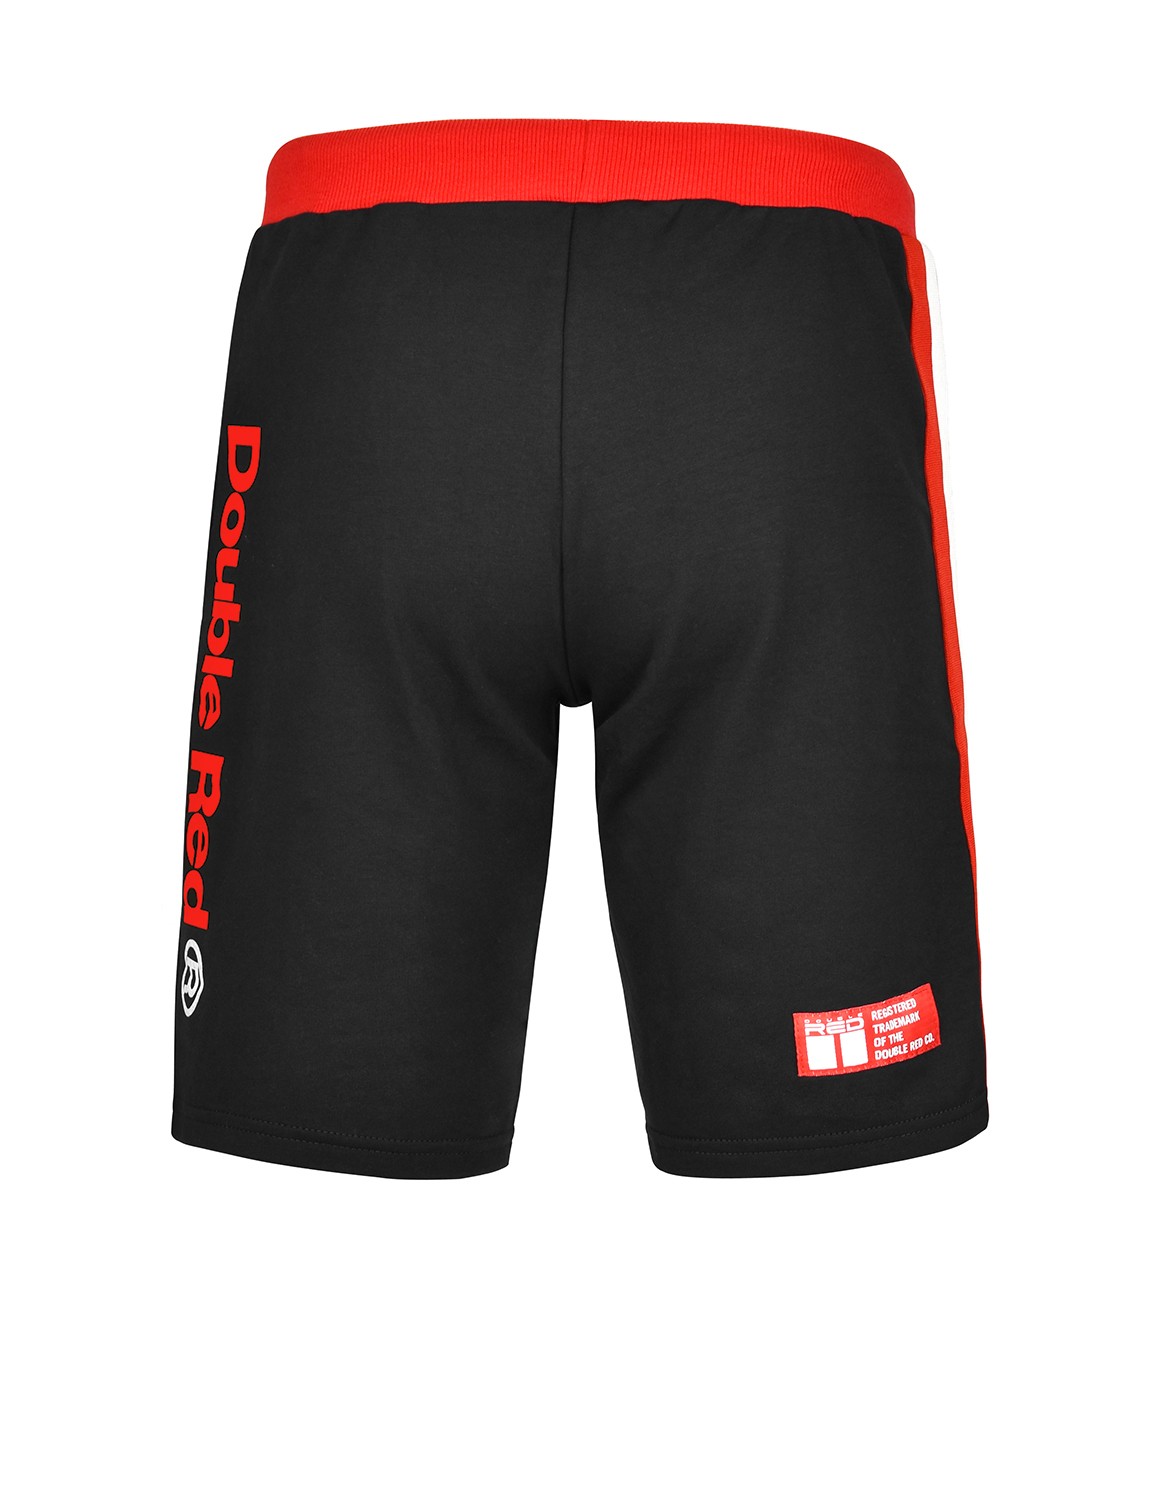 UTTER Shorts Black/Red